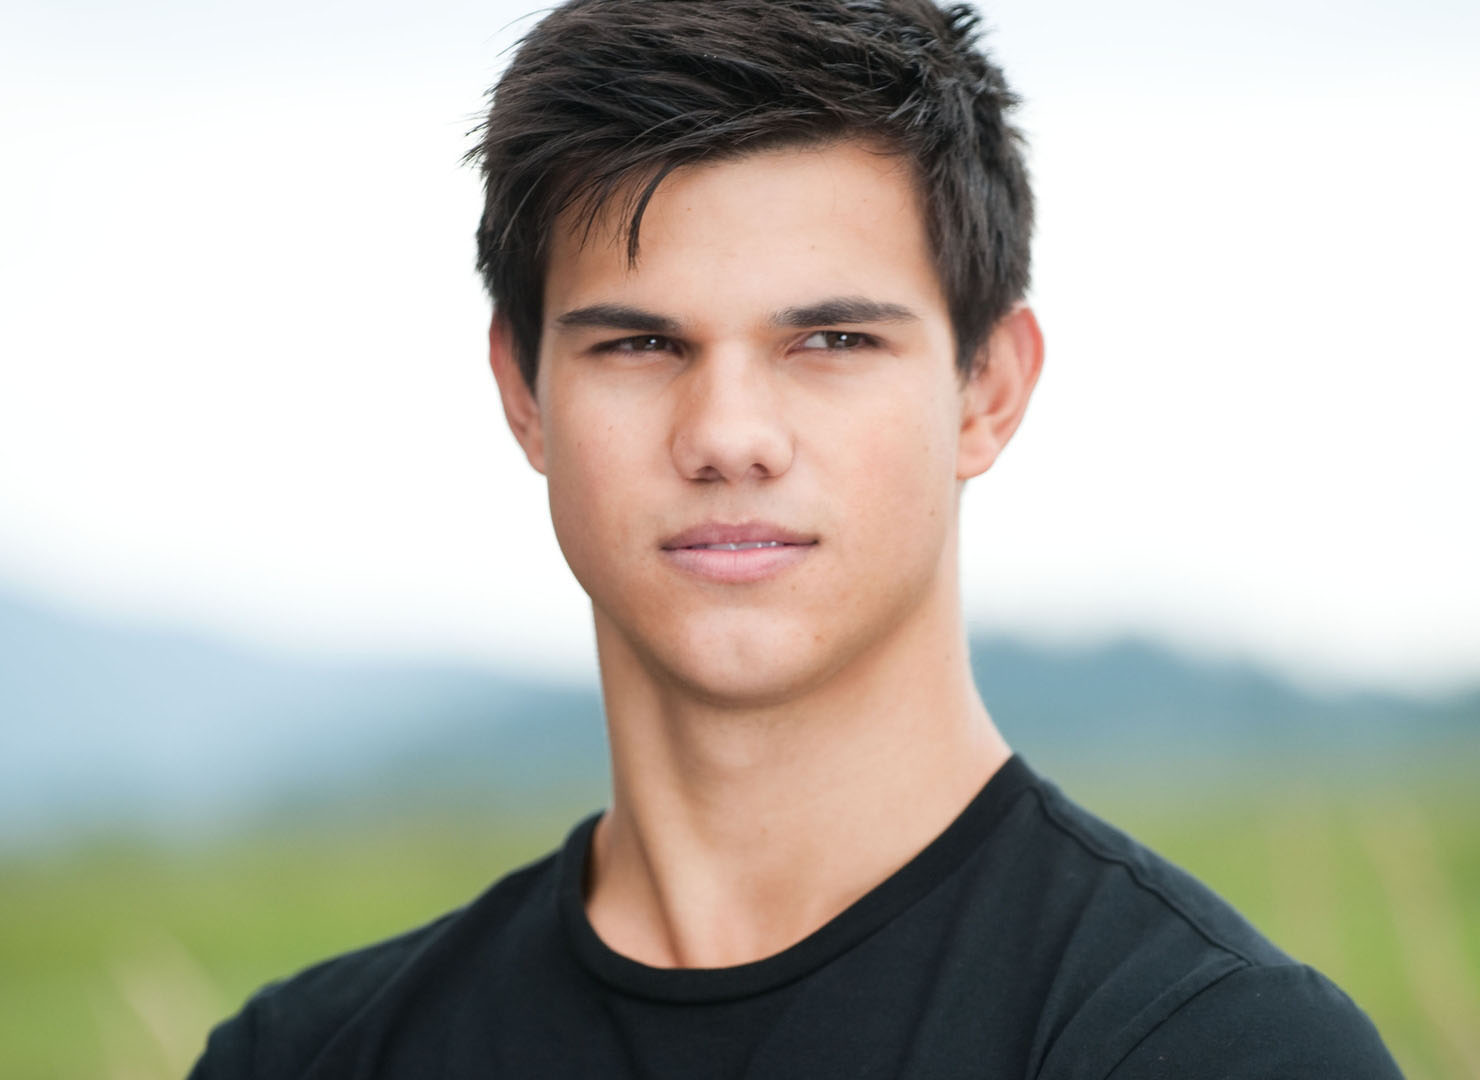 Taylor Lautner O Wallpaper Confiram A Seguir As Op Es De Imagens